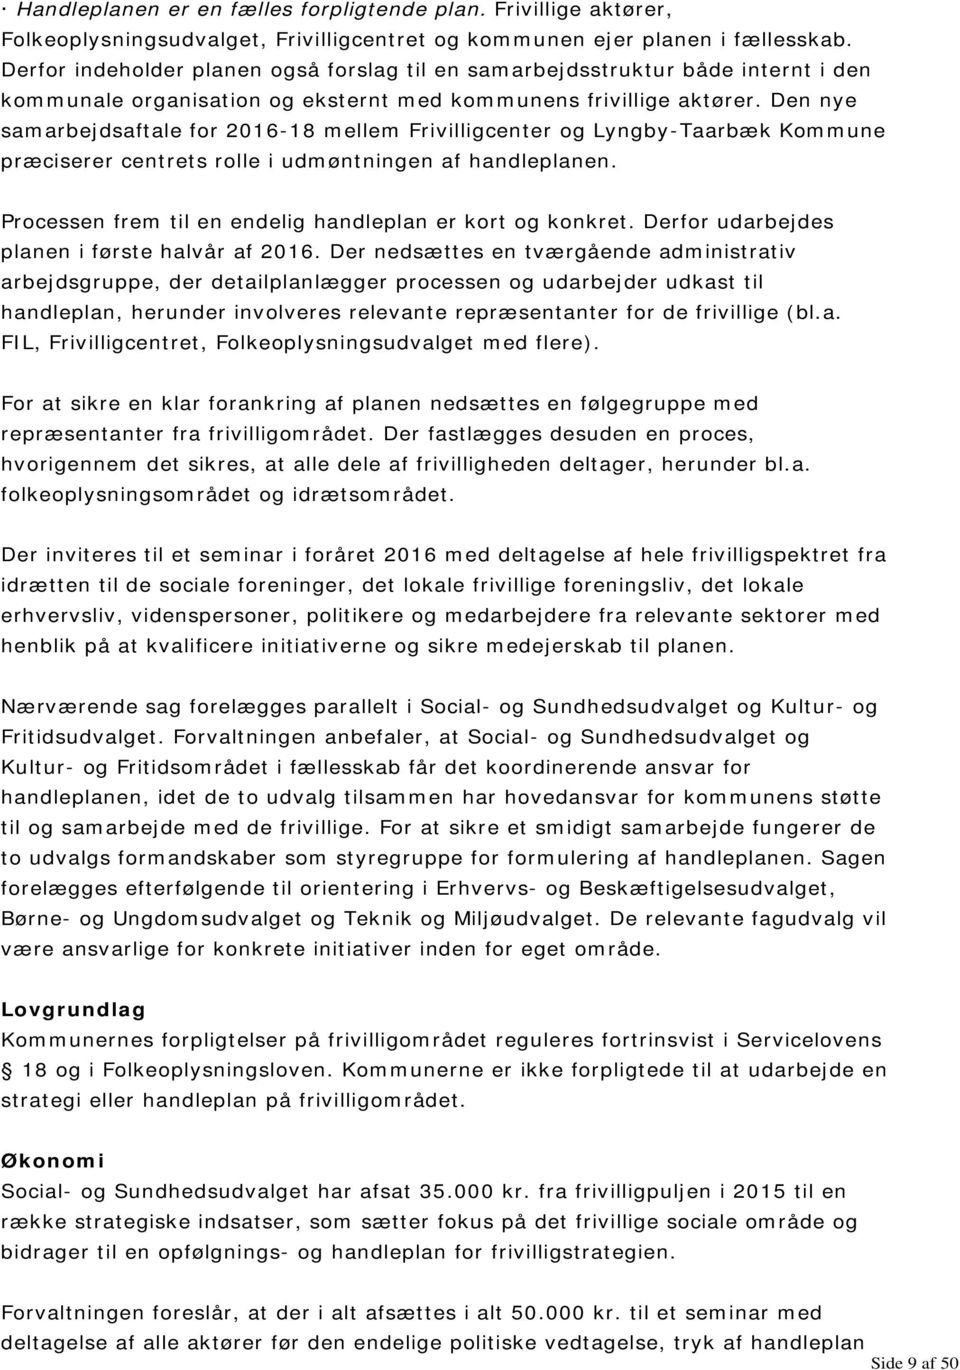 Den nye samarbejdsaftale for 2016-18 mellem Frivilligcenter og Lyngby-Taarbæk Kommune præciserer centrets rolle i udmøntningen af handleplanen.